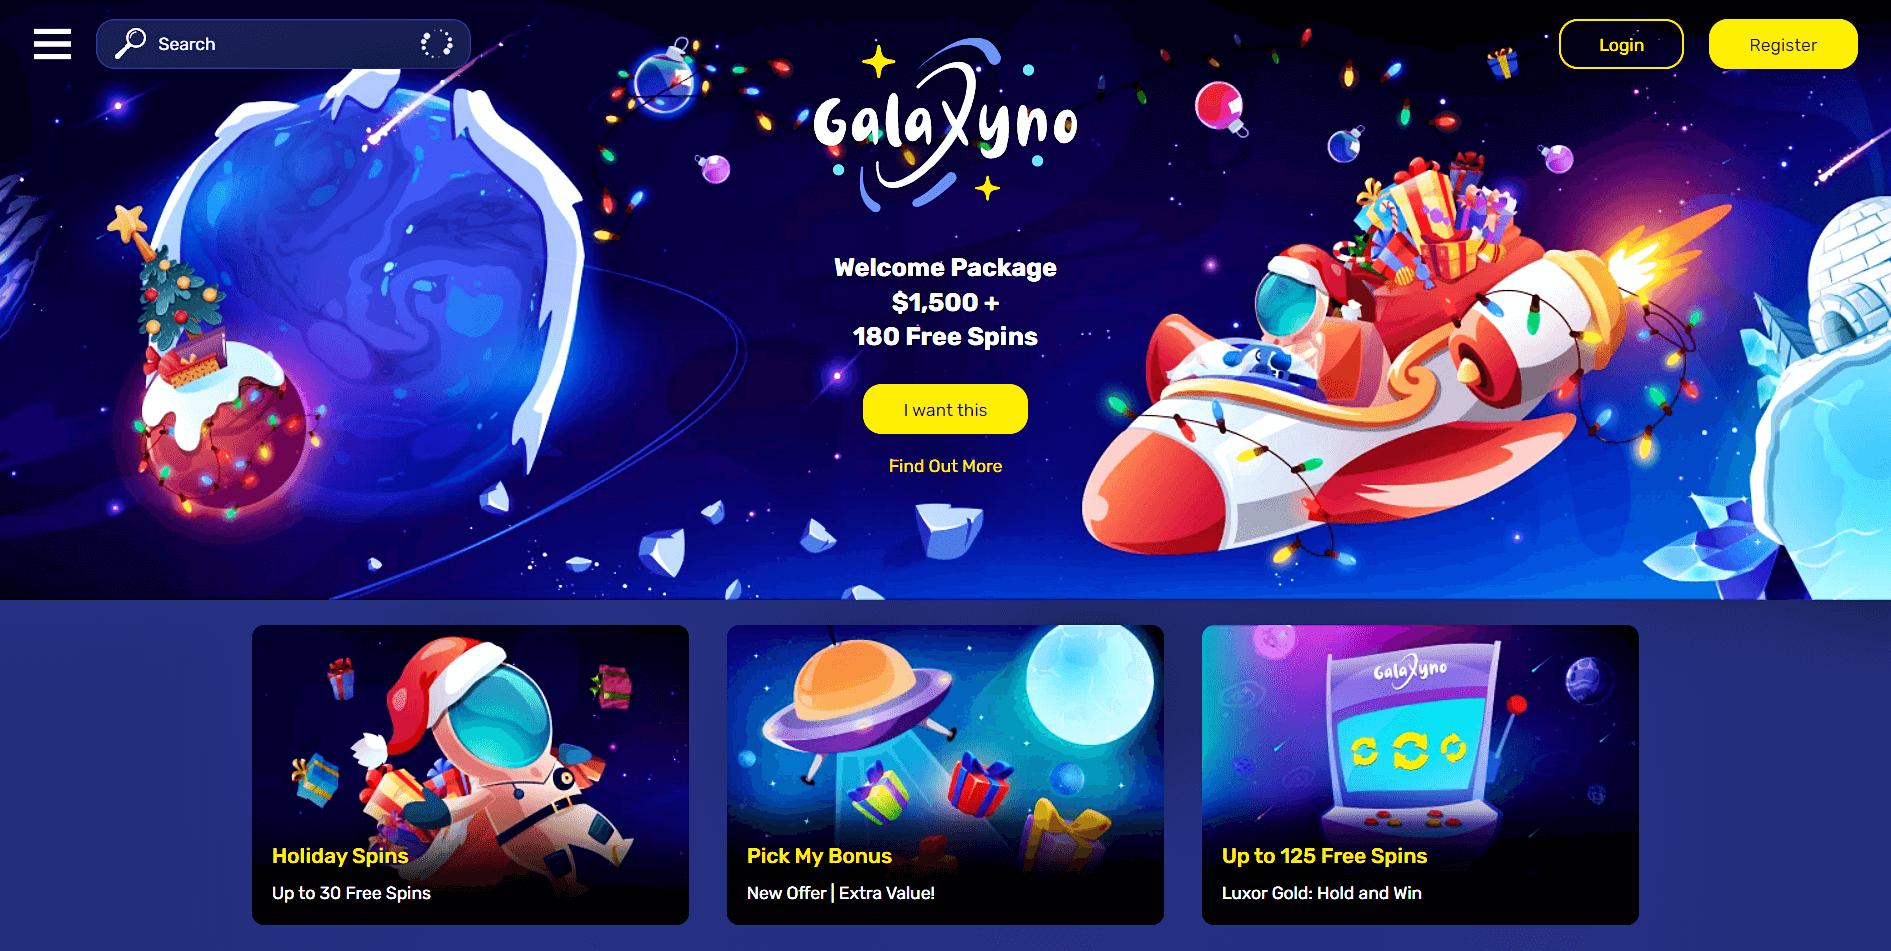 galaxyno casino site